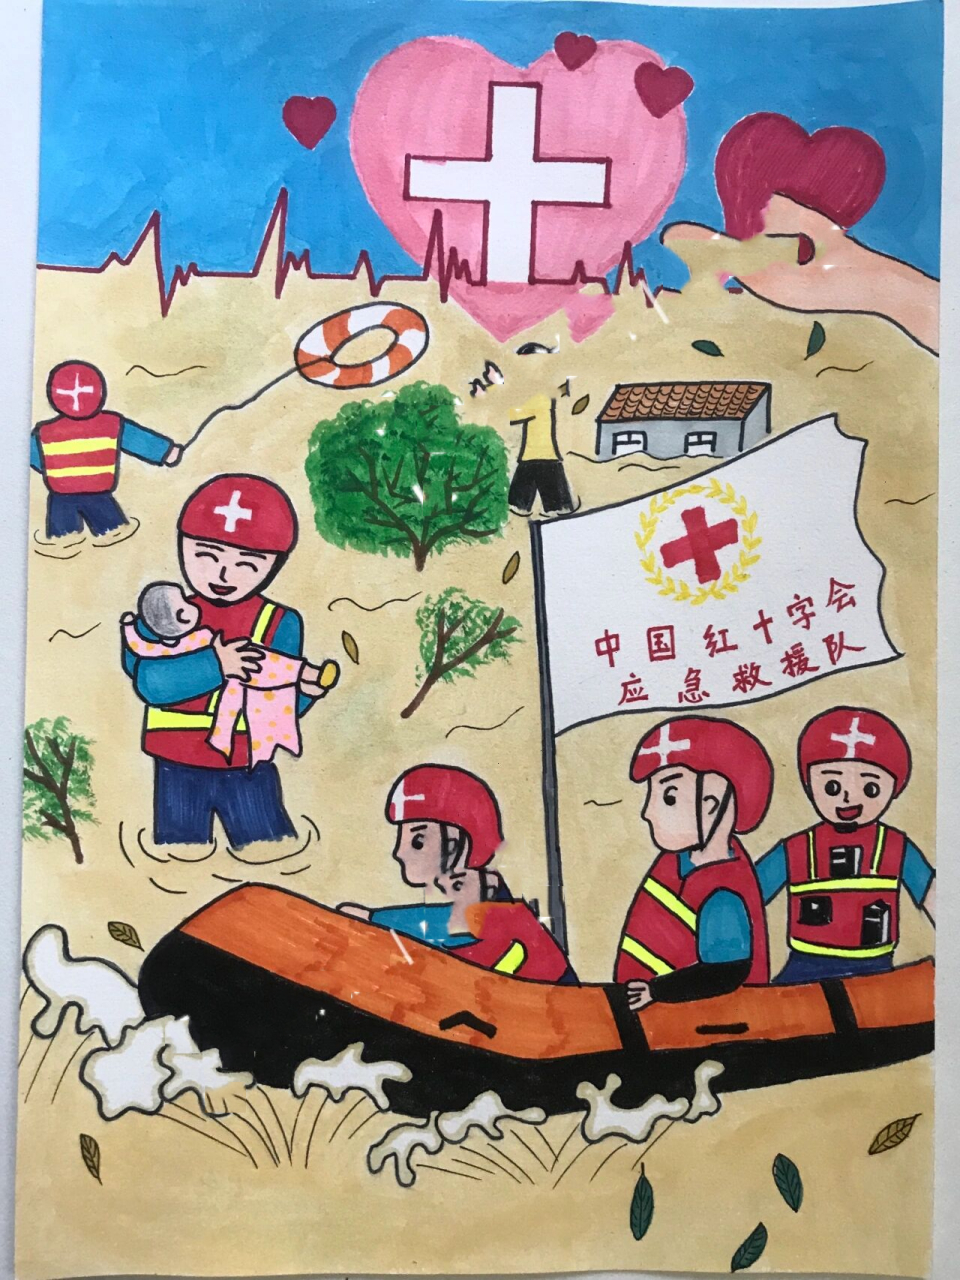 【红十字/抗洪救灾】主题画 【客单原创】 灵感来自今夏的河南水灾